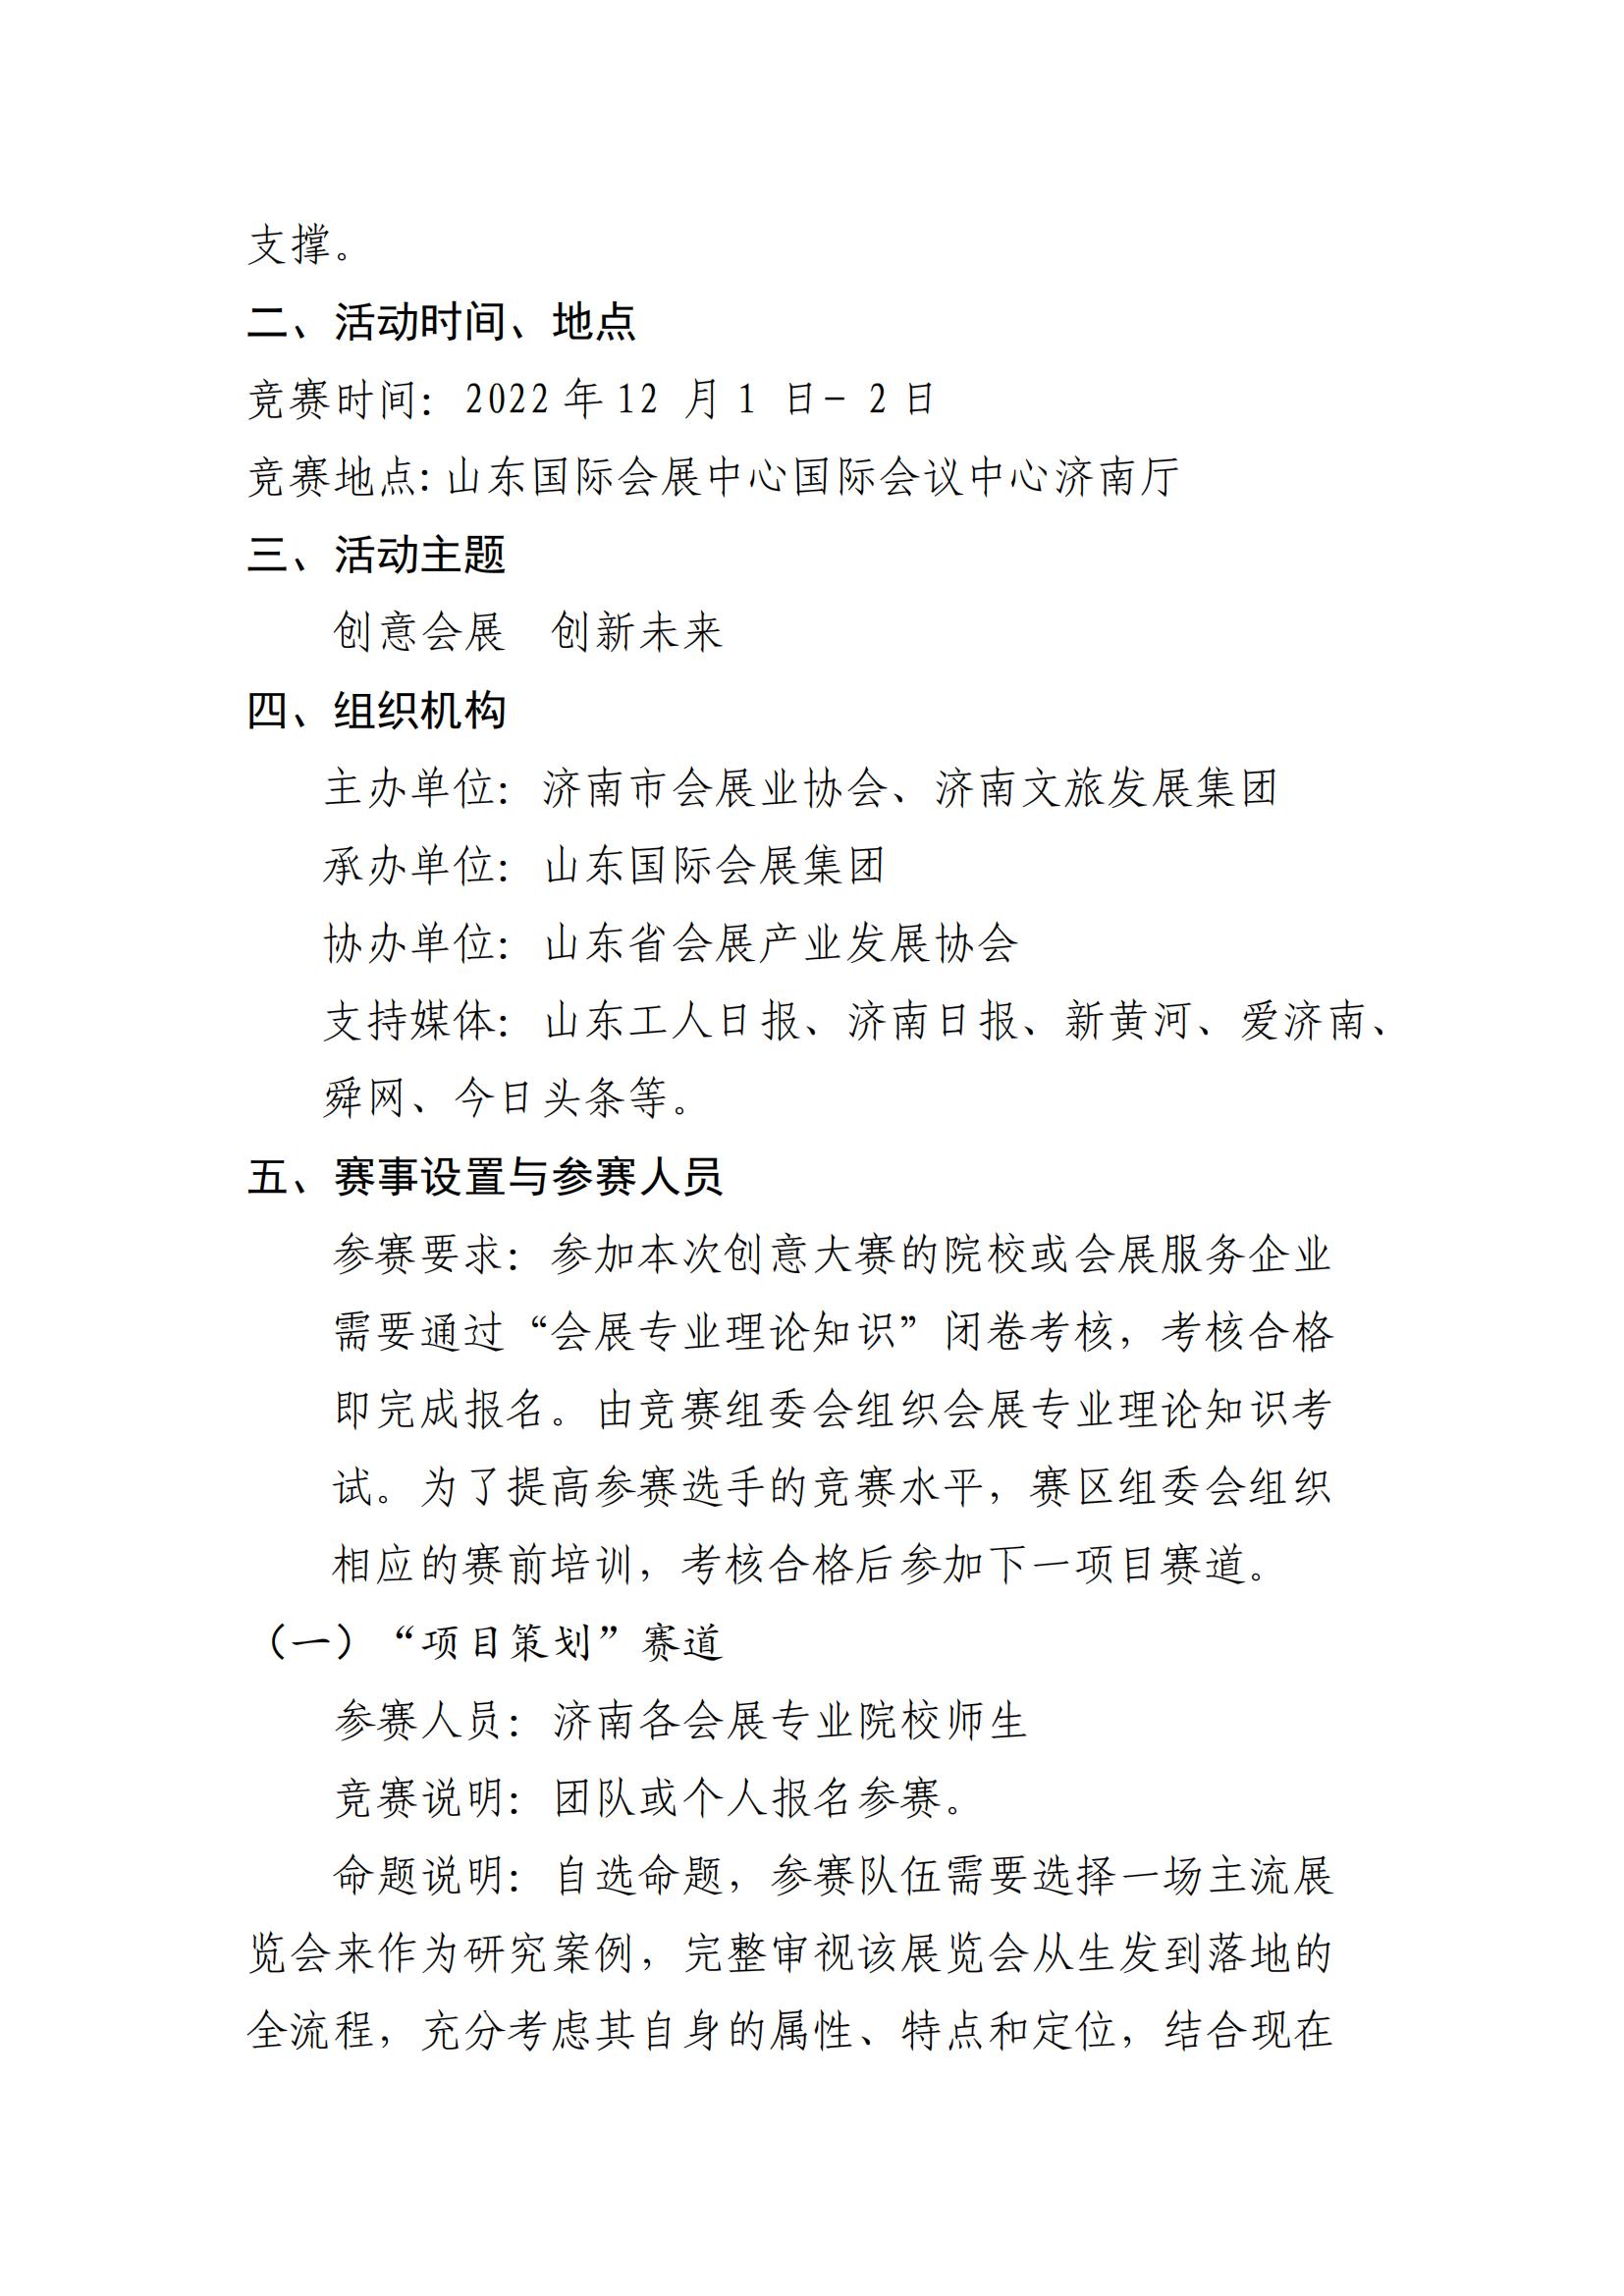 济南市会展业协会关于组织参加竞赛的通知11_01_03